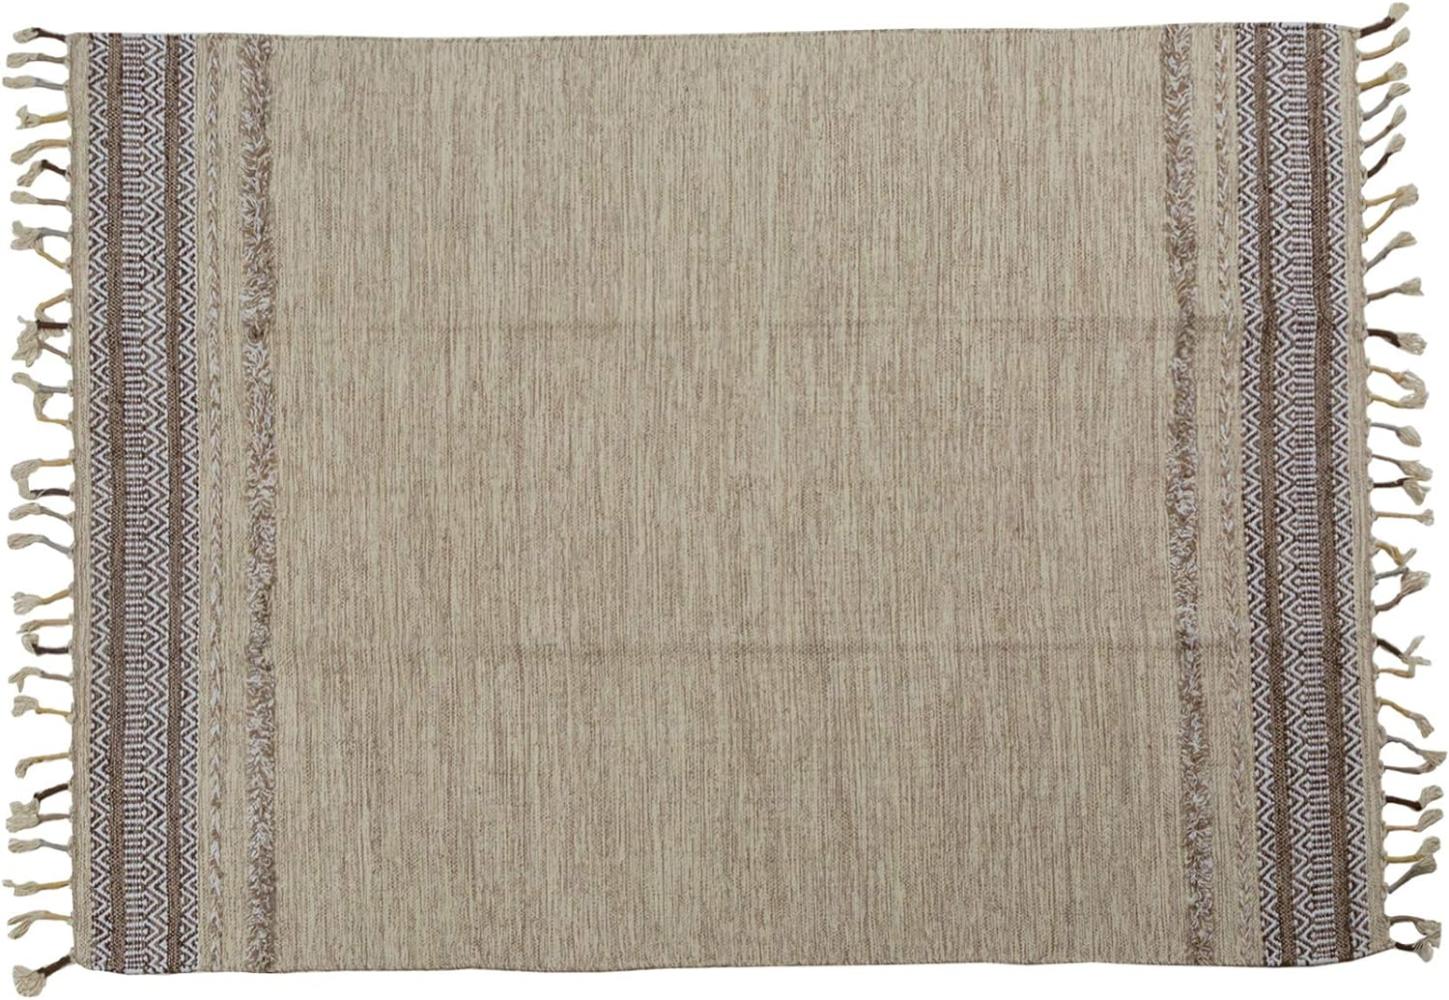 Dmora Moderner Boston-Teppich, Kelim-Stil, 100% Baumwolle, beige, 110x60cm Bild 1